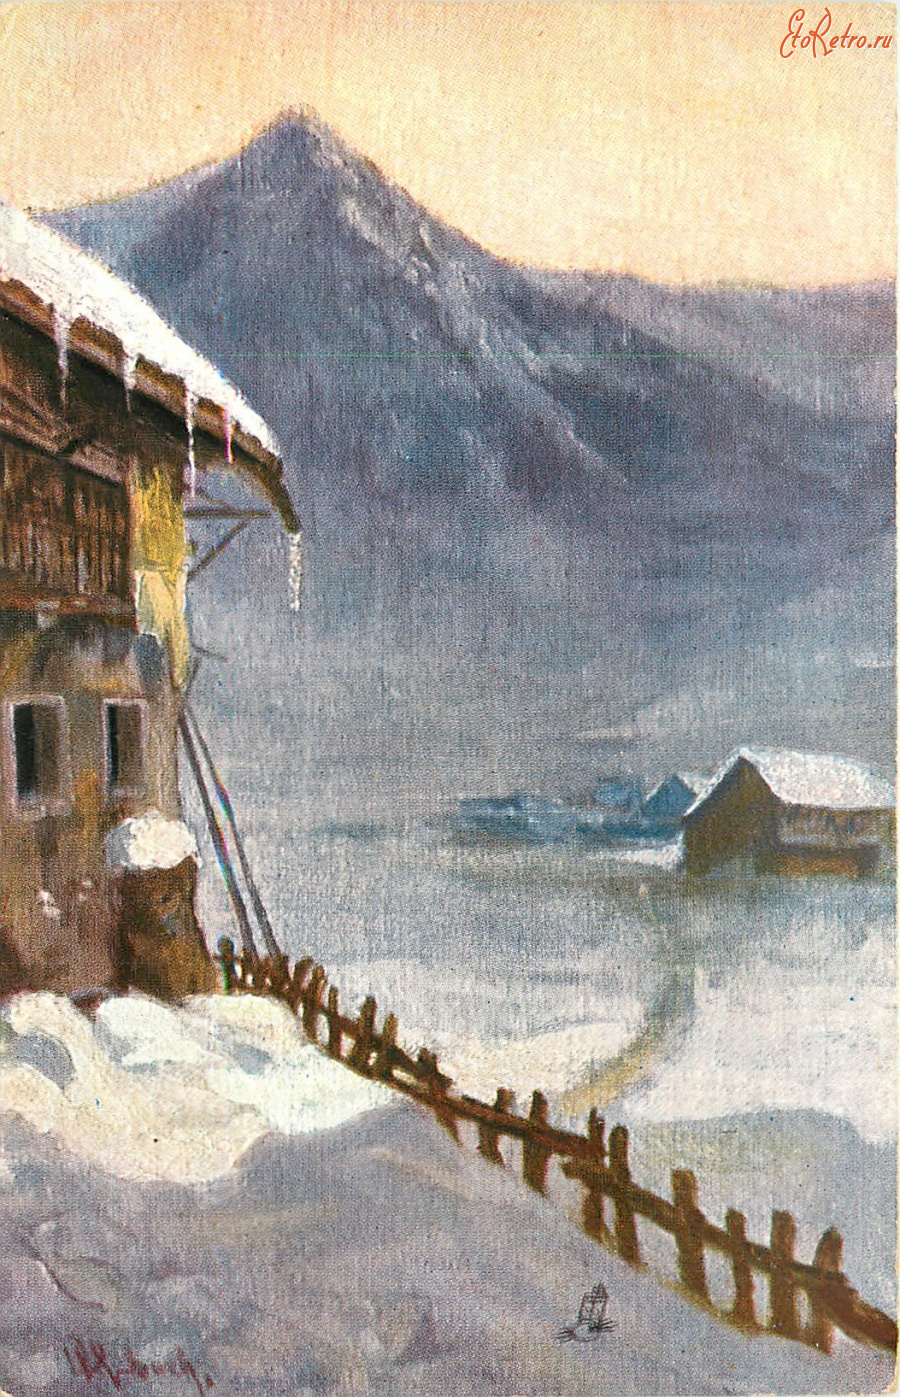 Ретро открытки - В. Рубах. Альпийская гостиница под снегом